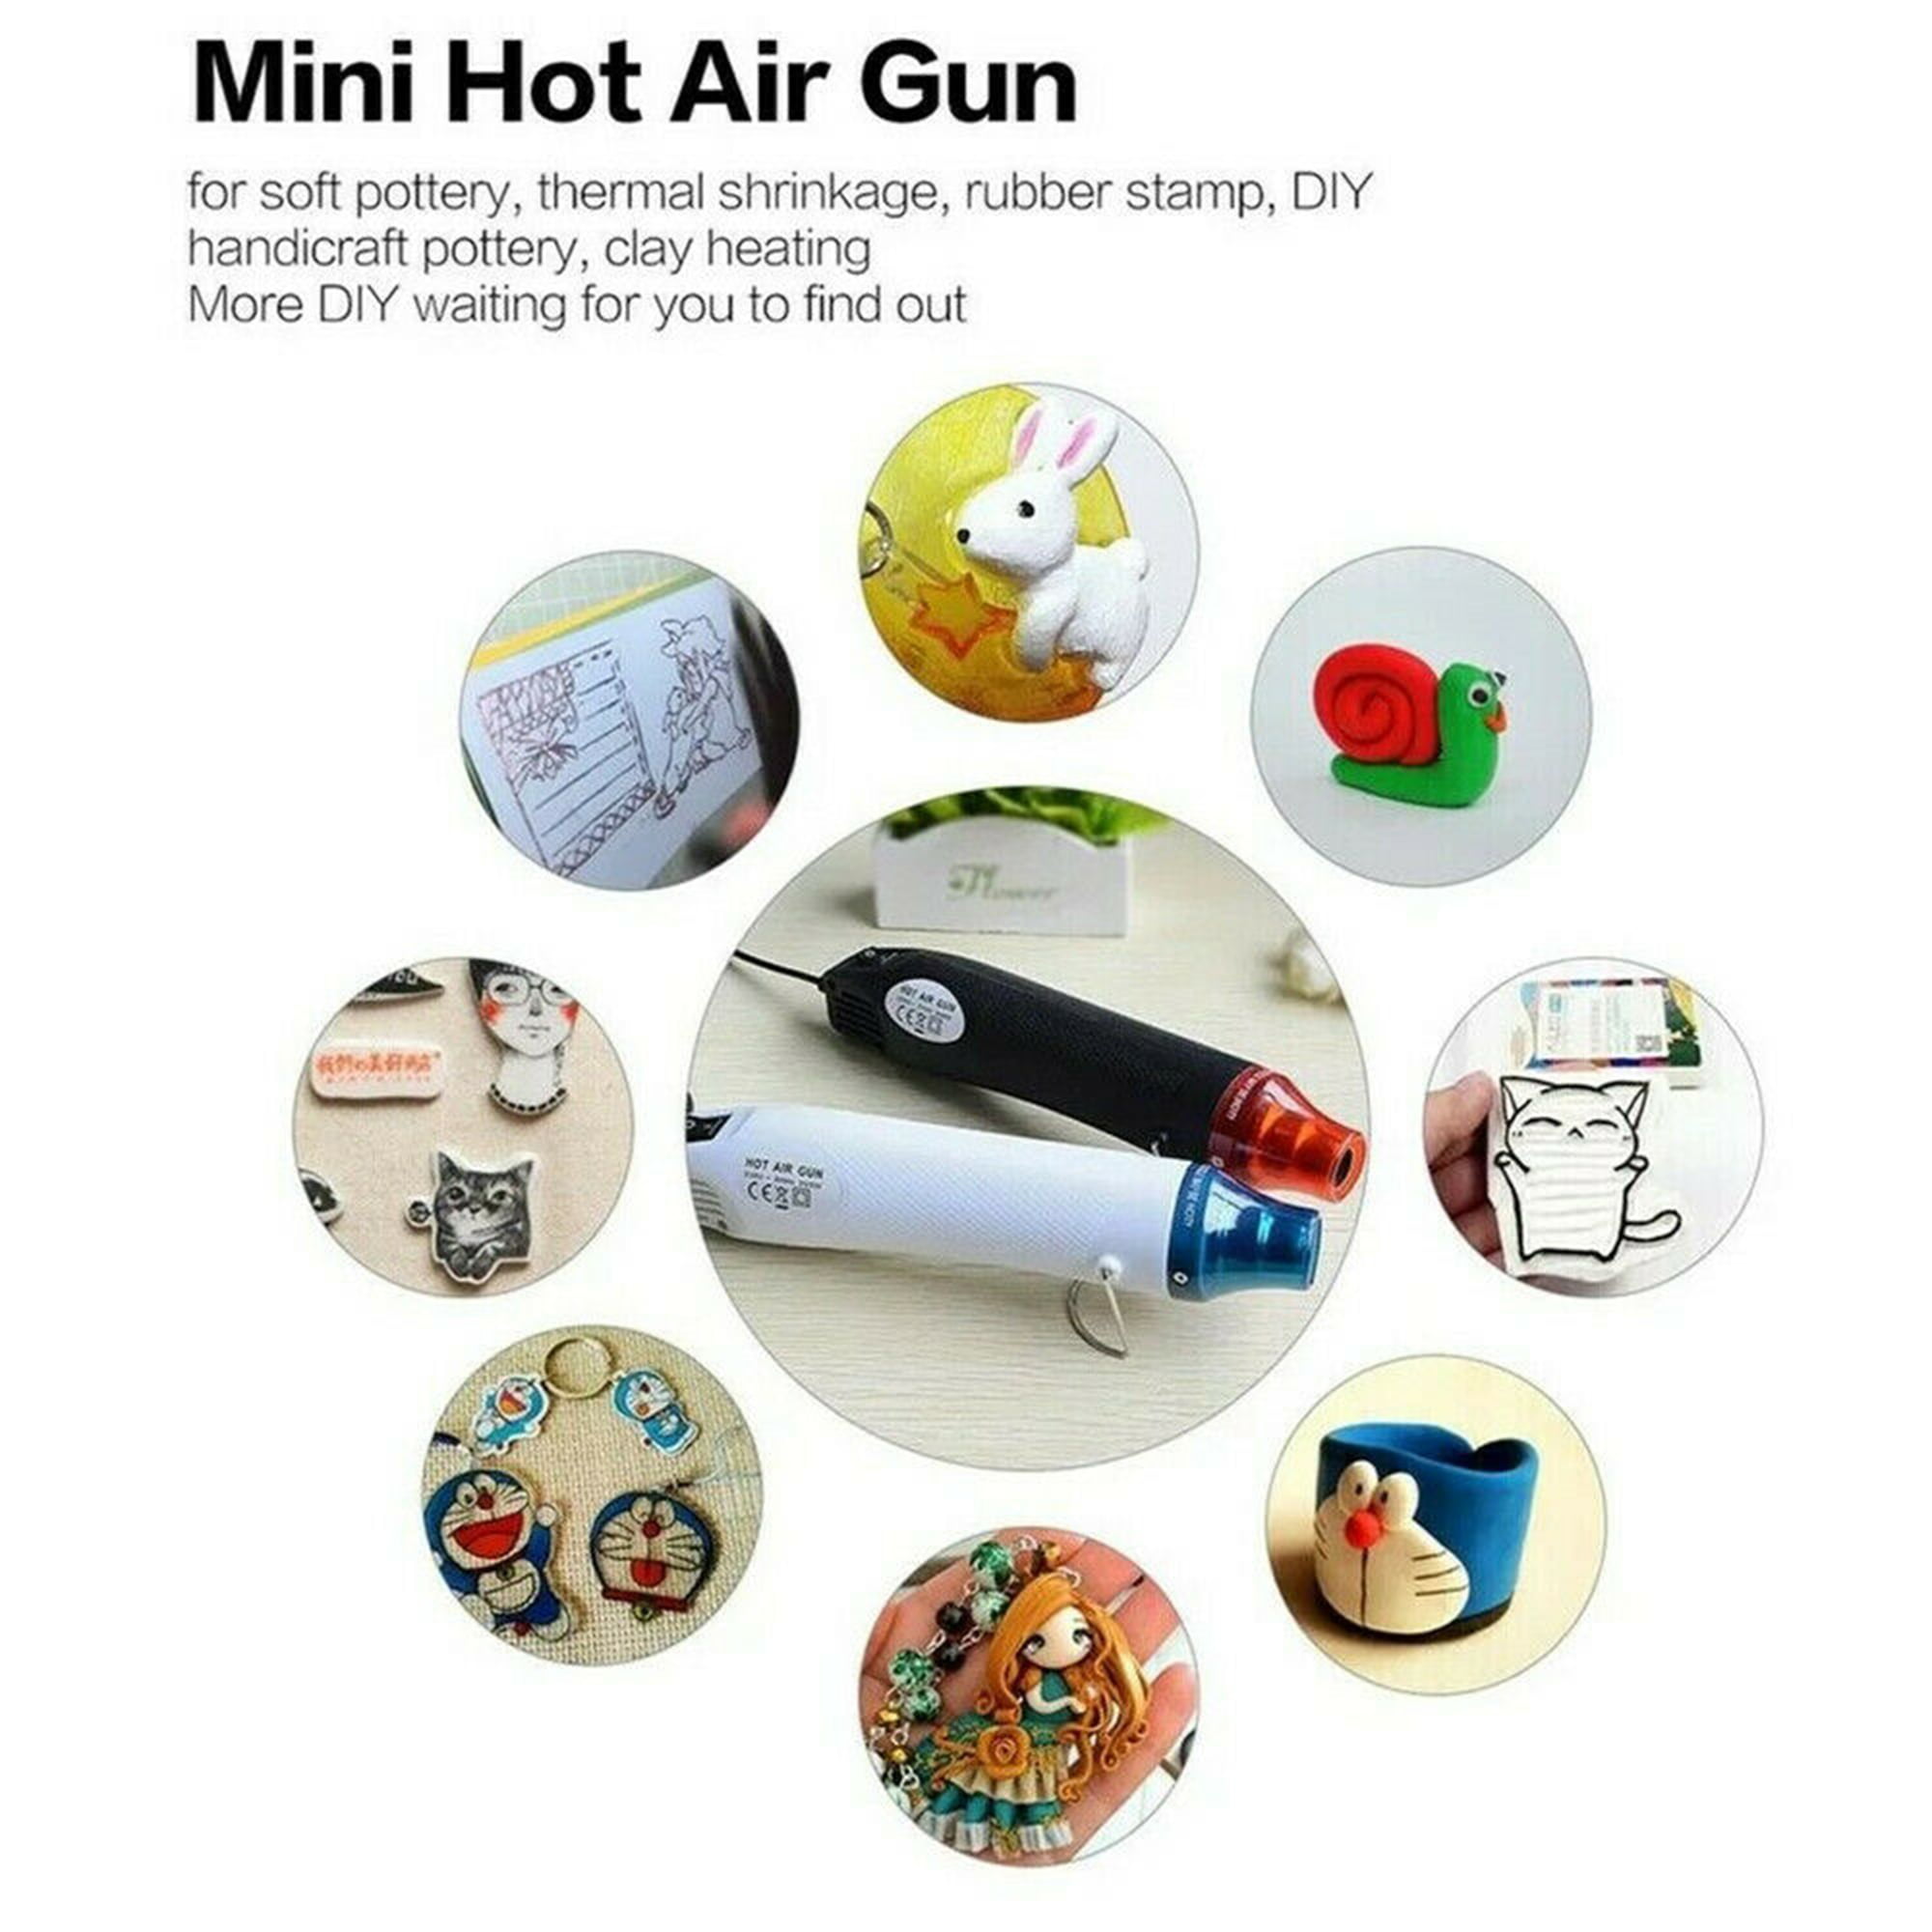 NTE HG-300D Mini Portable Handheld Heat Gun, Hot Air Gun for DIY Arts –  ReBuild Skills